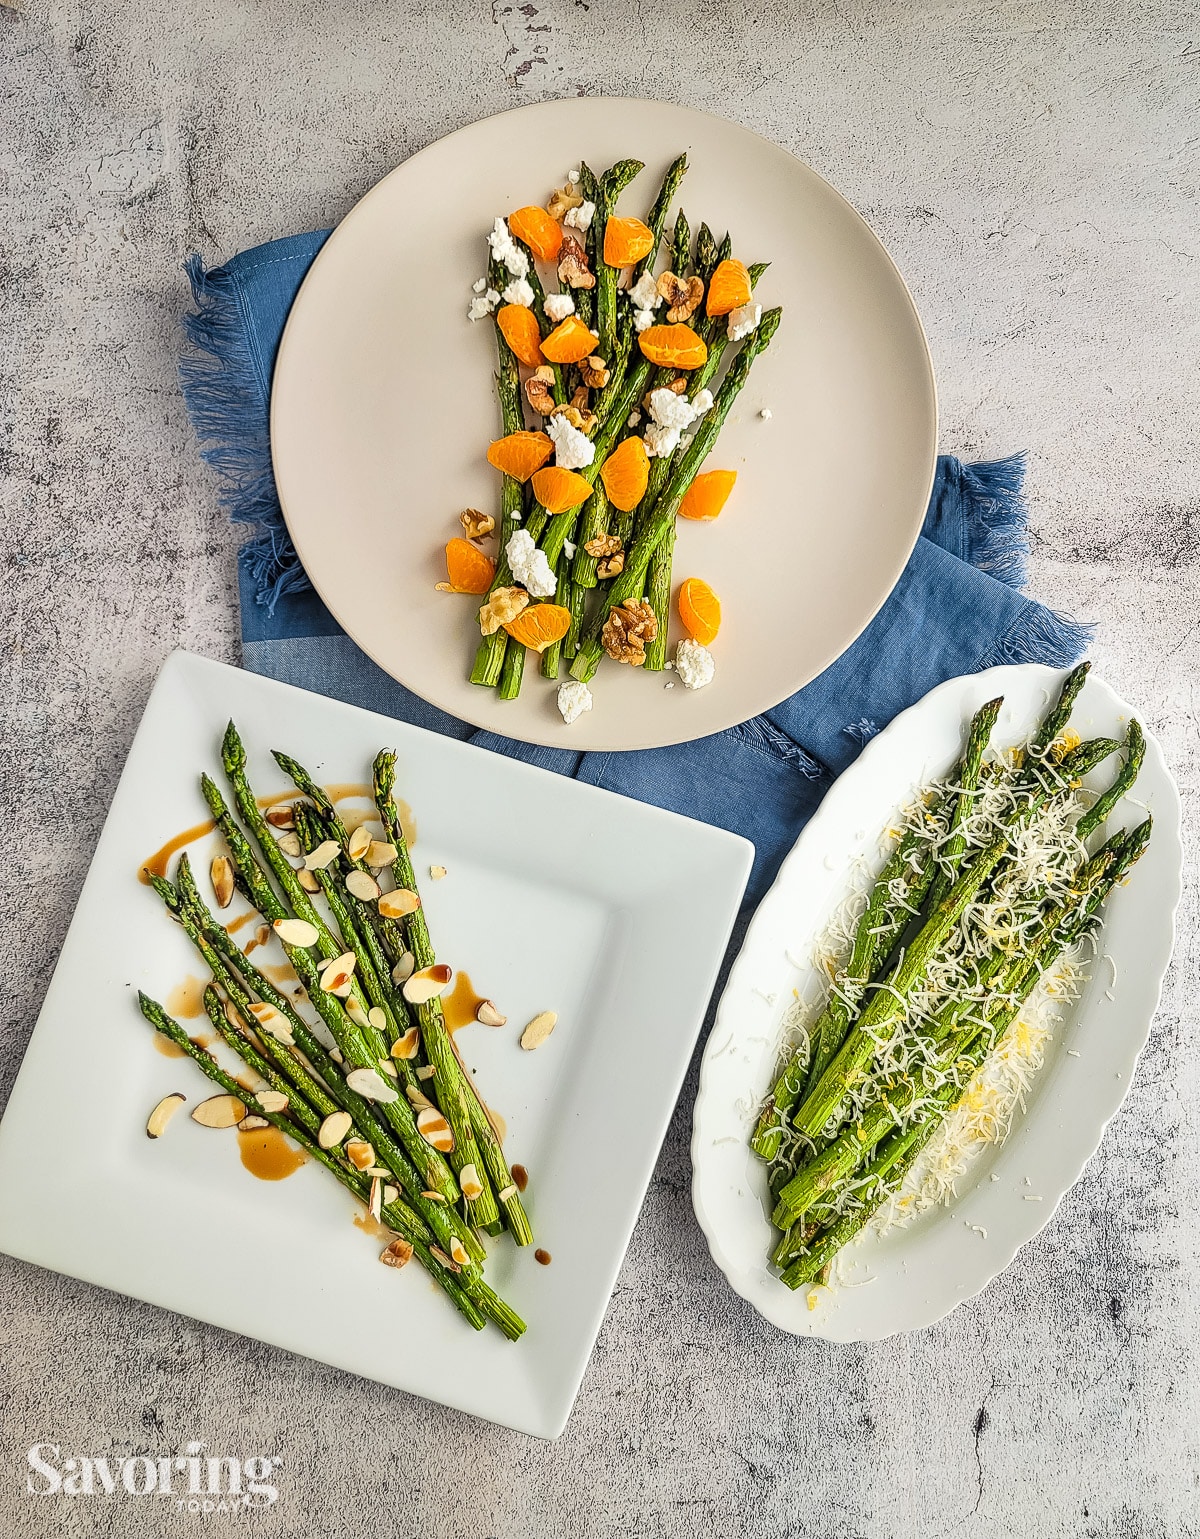 Roasted asparagus on plates over a blue towel